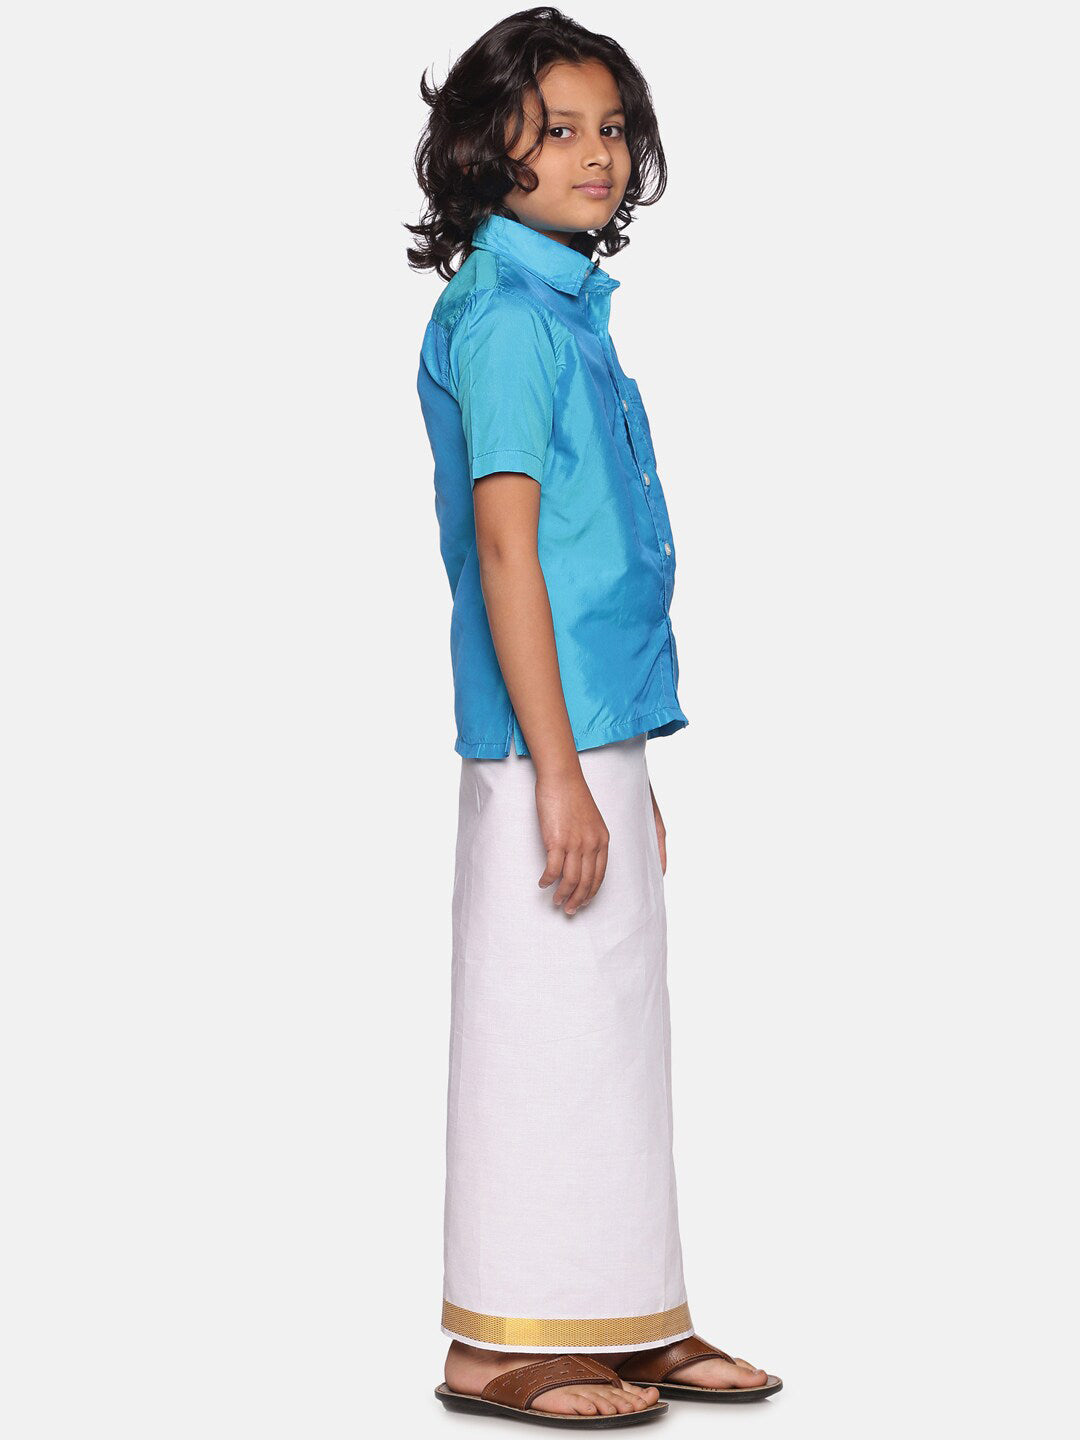 Sethukrishna Boys Turquoise Blue & White Solid Cotton Shirt & Dhoti Set - Distacart